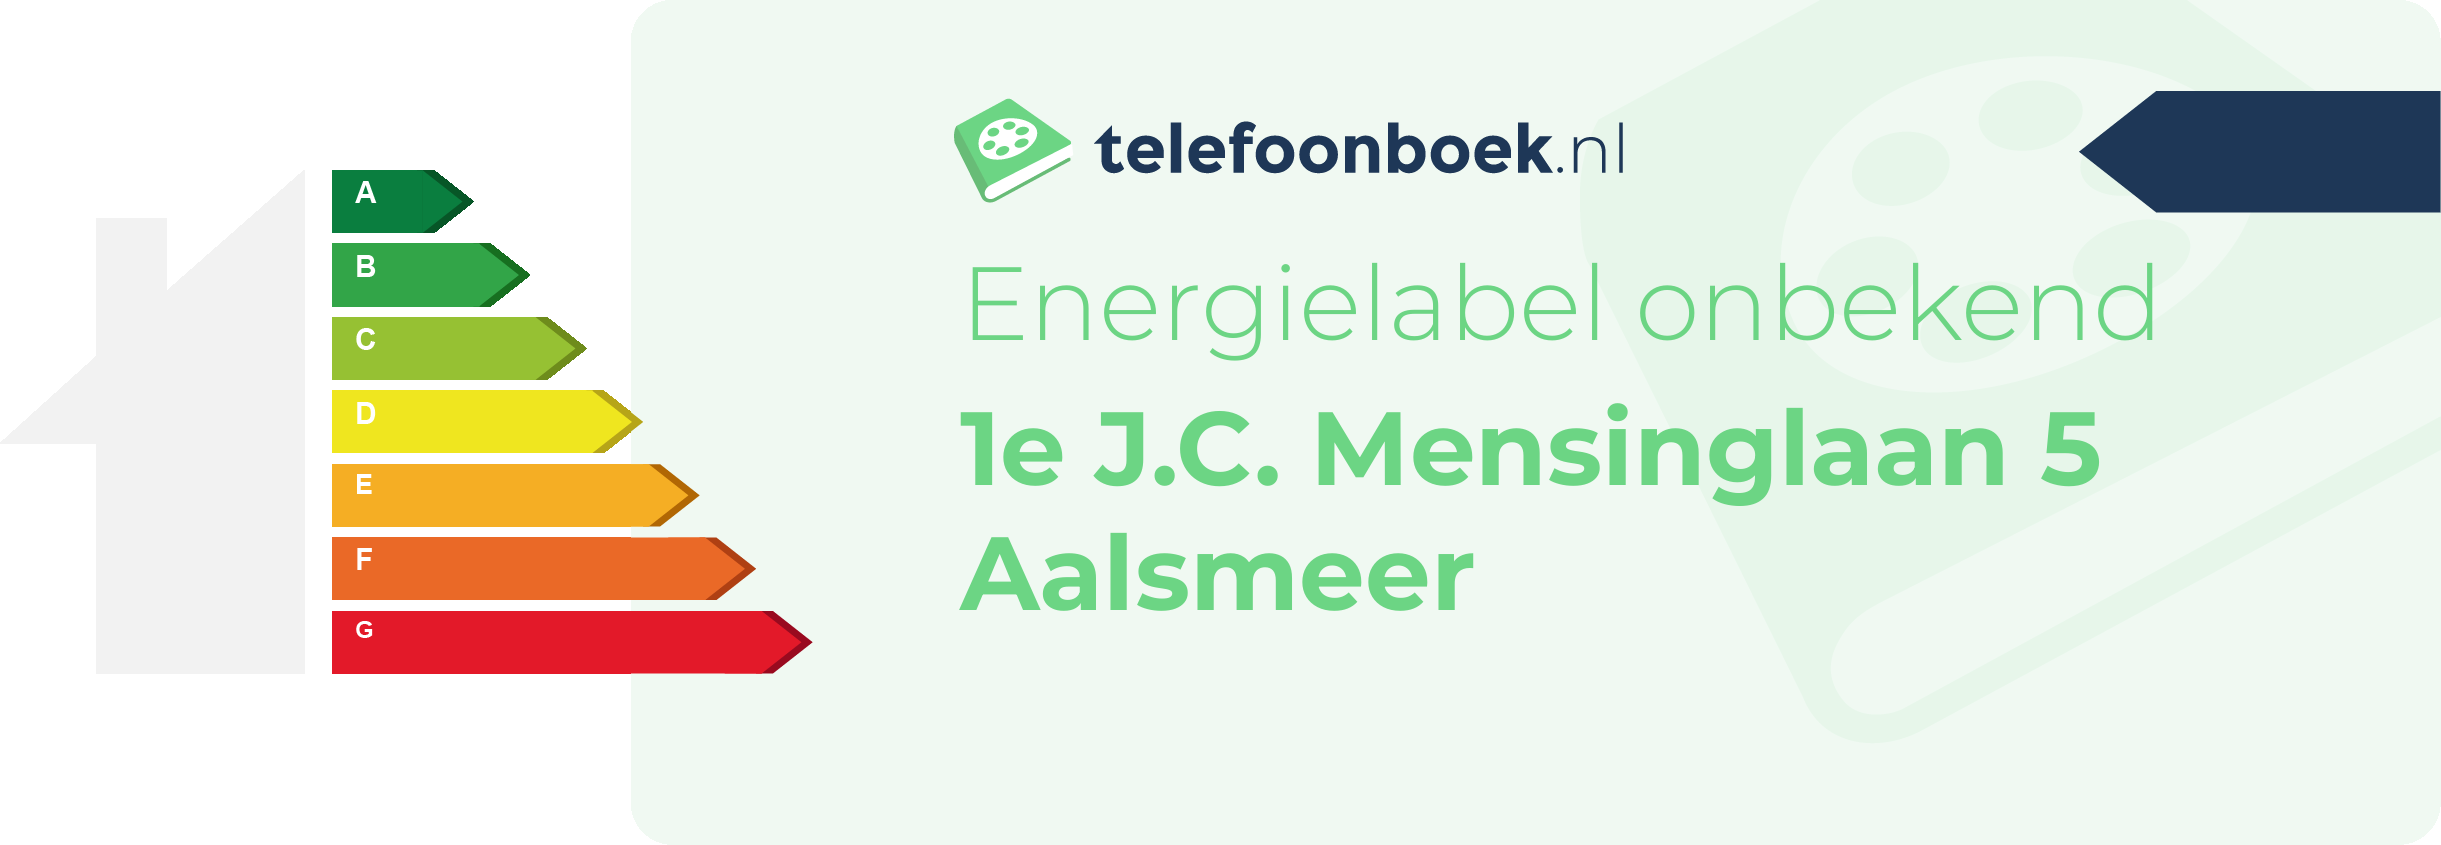 Energielabel 1e J.C. Mensinglaan 5 Aalsmeer